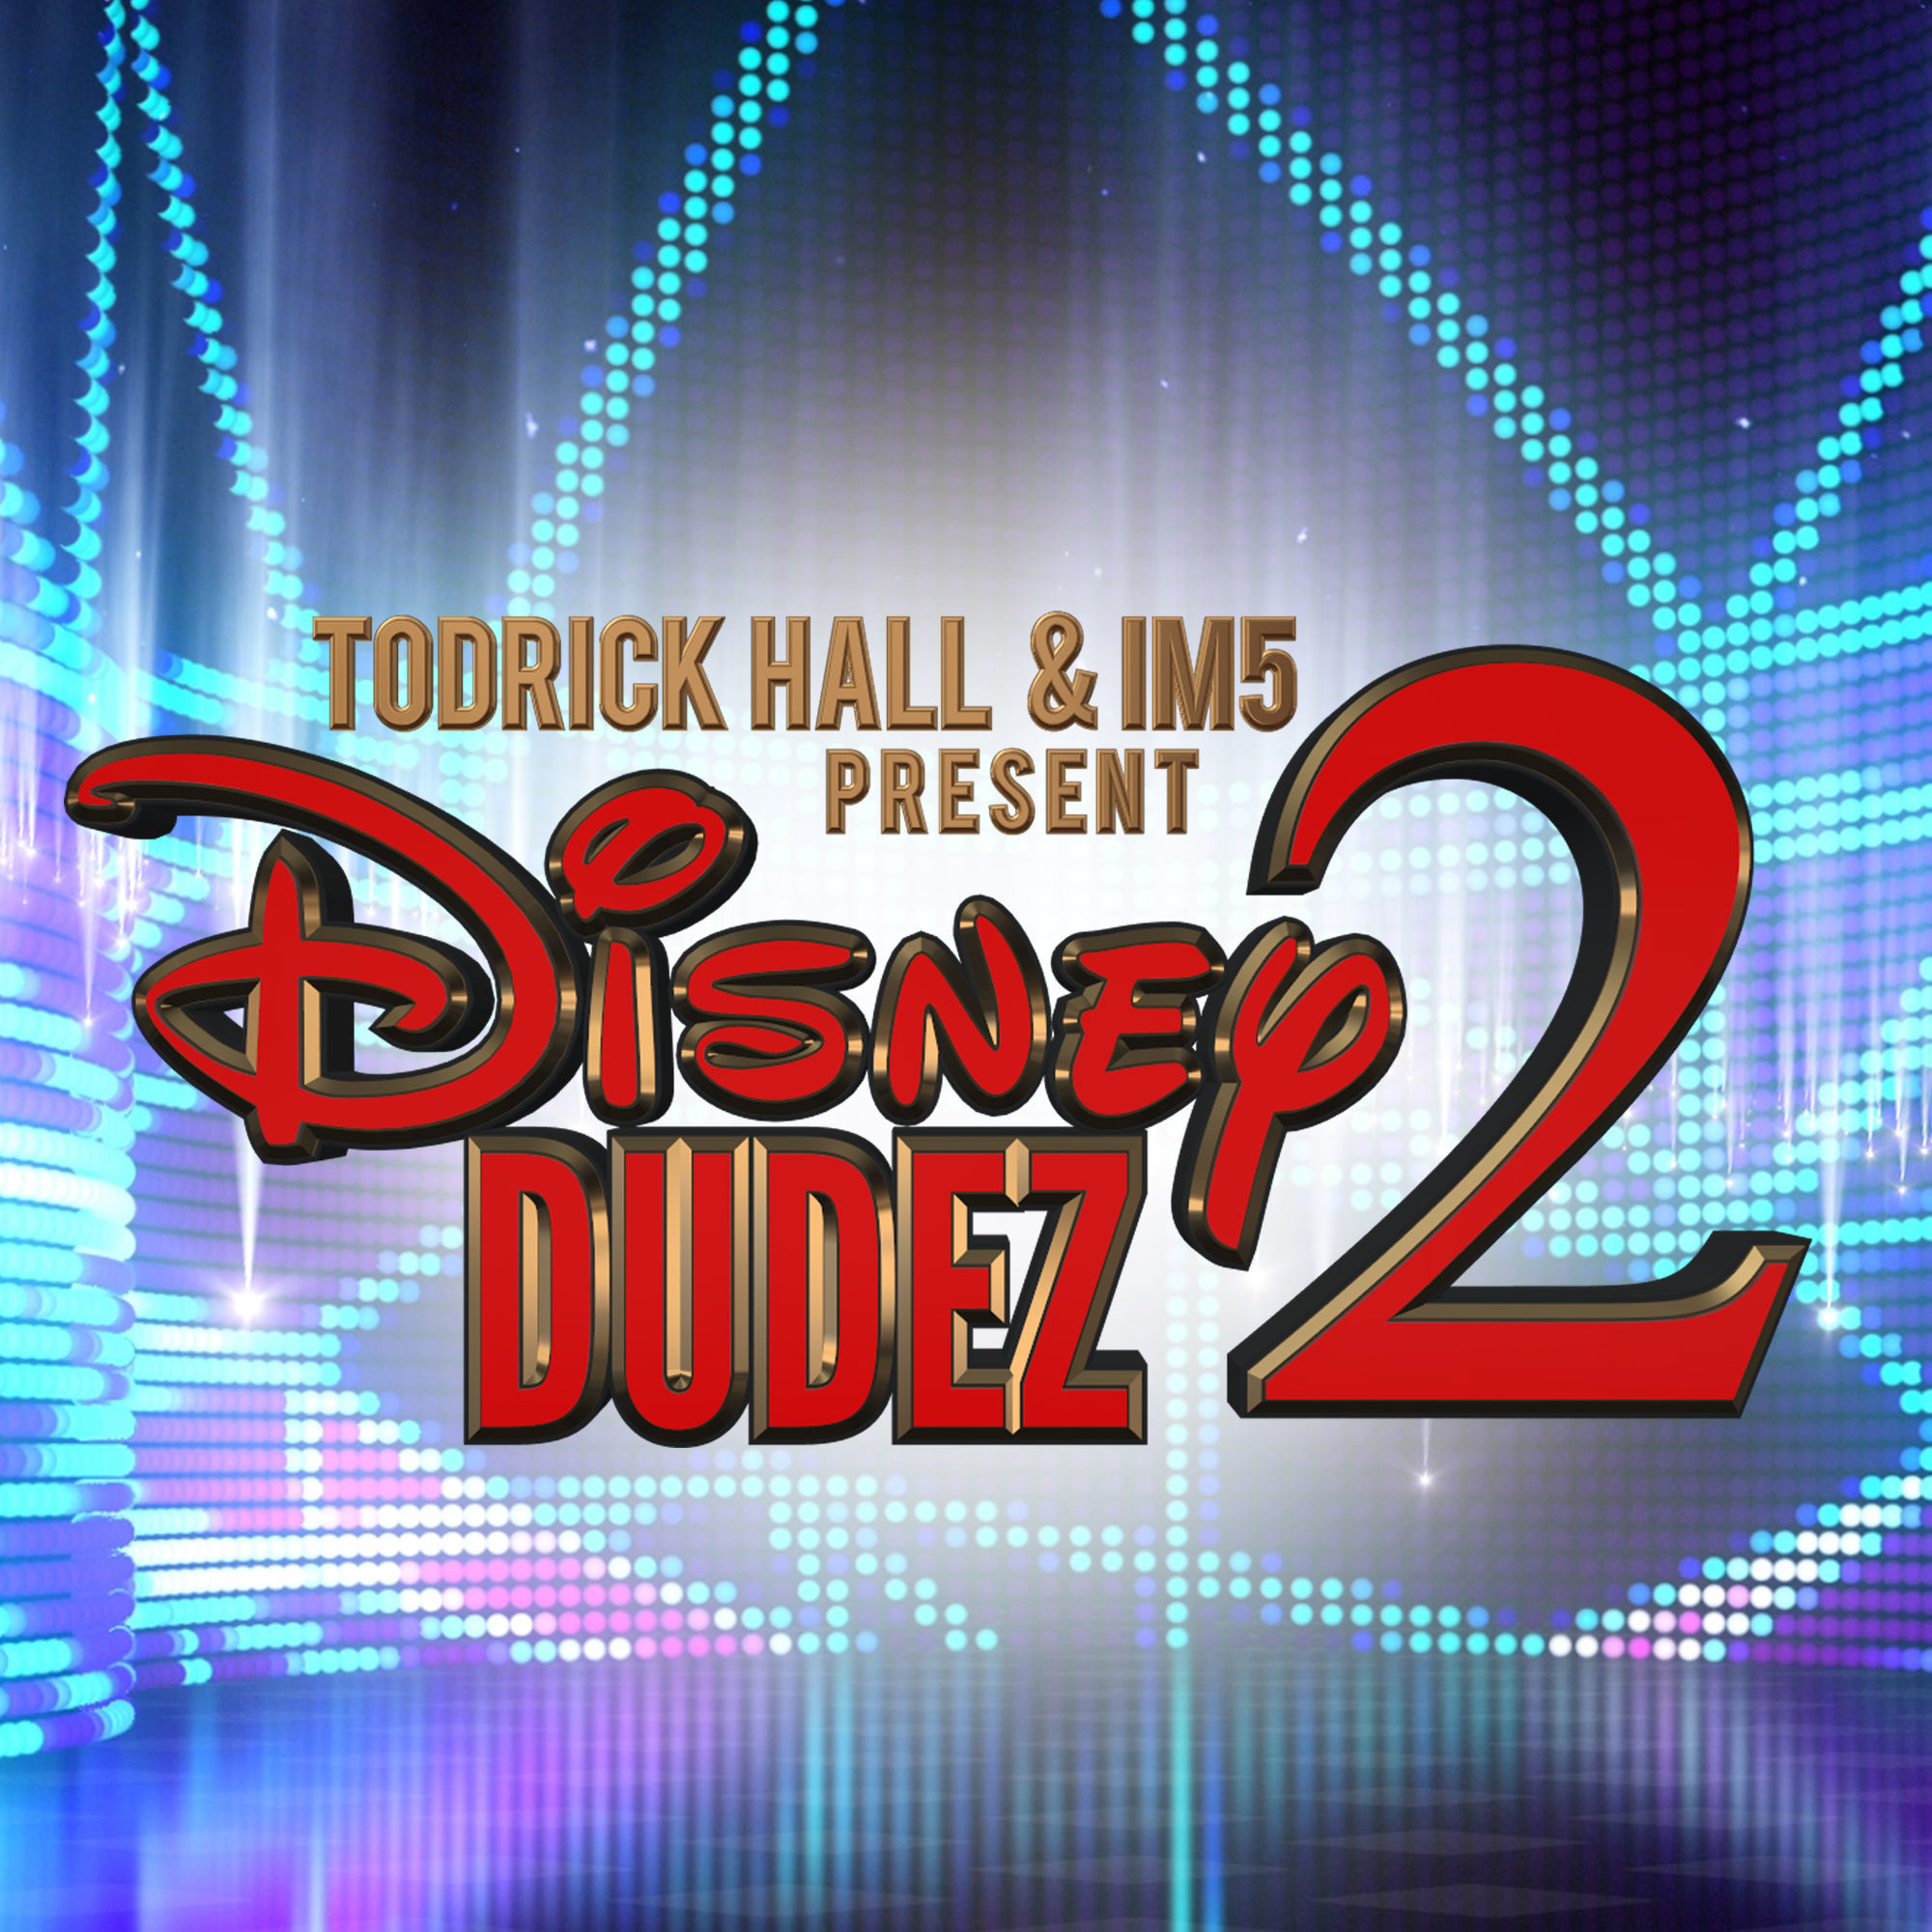 Disney Dudez 2 by Todrick Hall & IM5 (즐거움 흥겨움 경쾌 활기 훈훈 엽기 귀여움 흥함 디즈니 토드릭 홀)